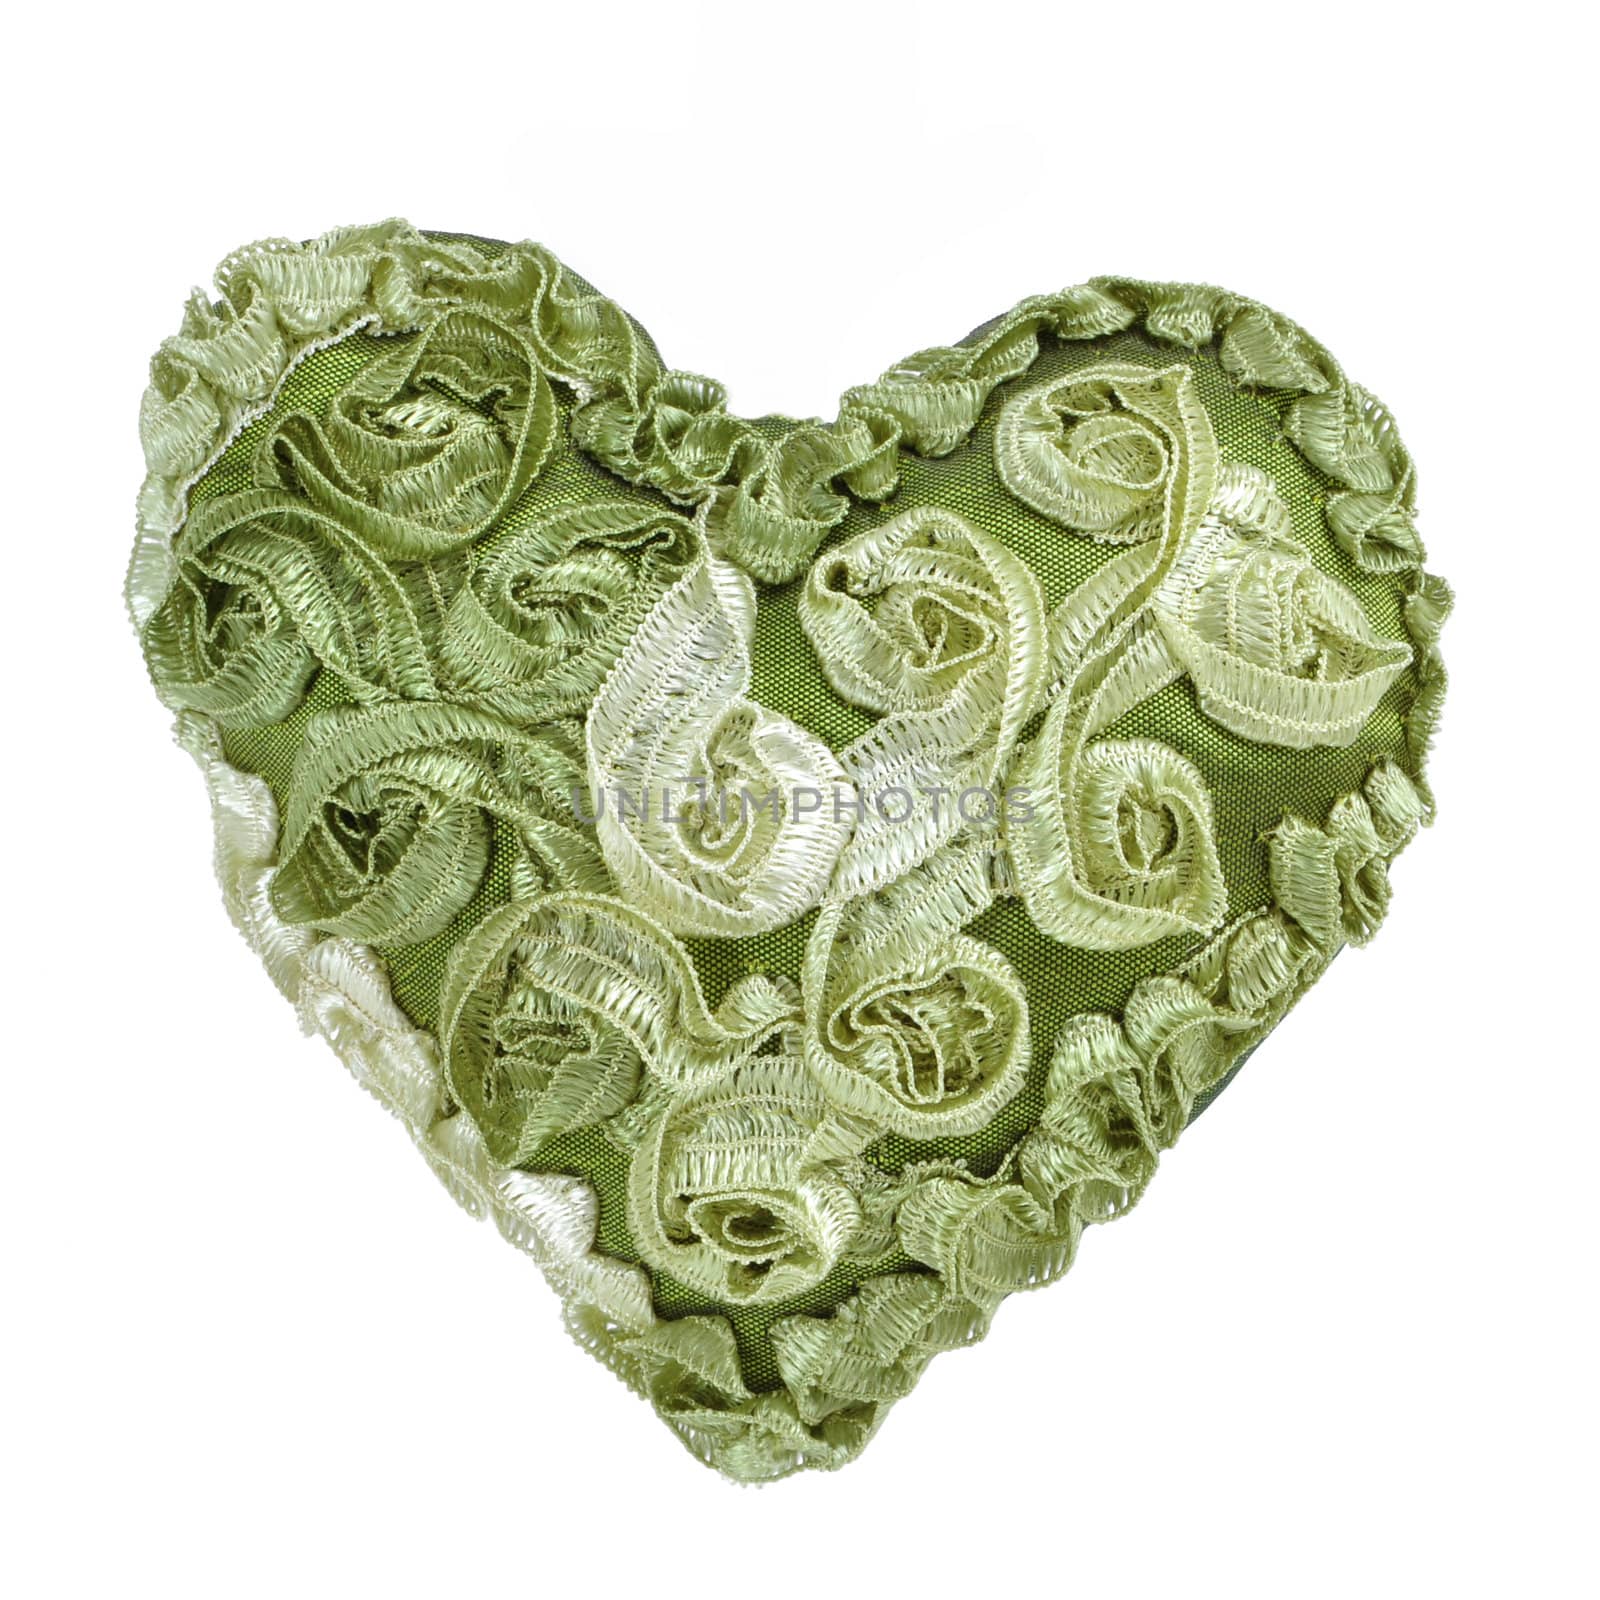 Green Heart by antpkr